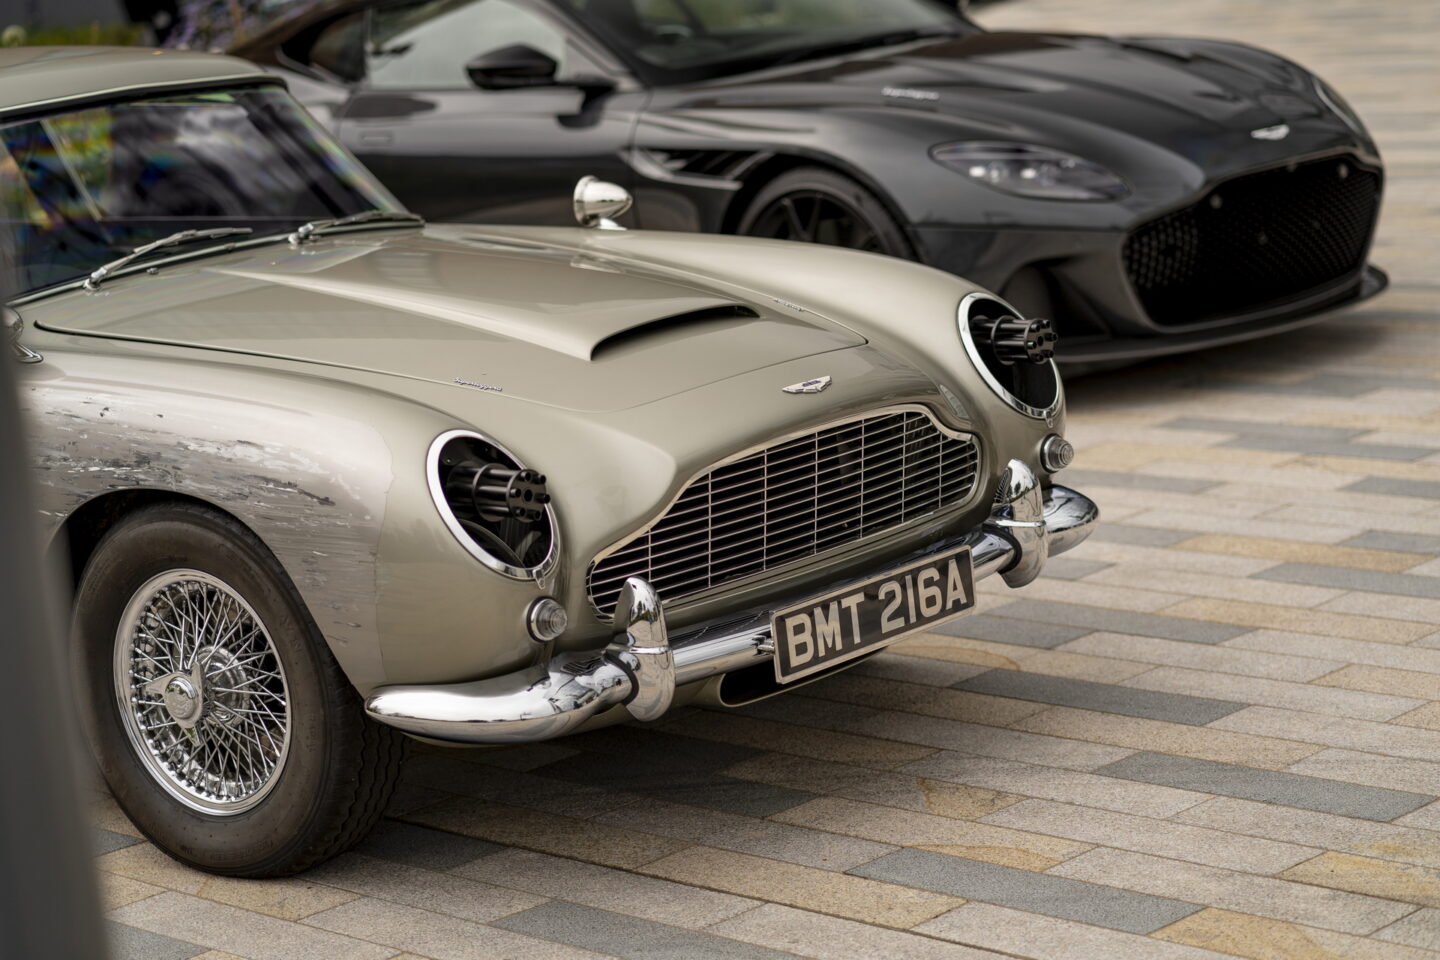 Aston Martin no time to die 007